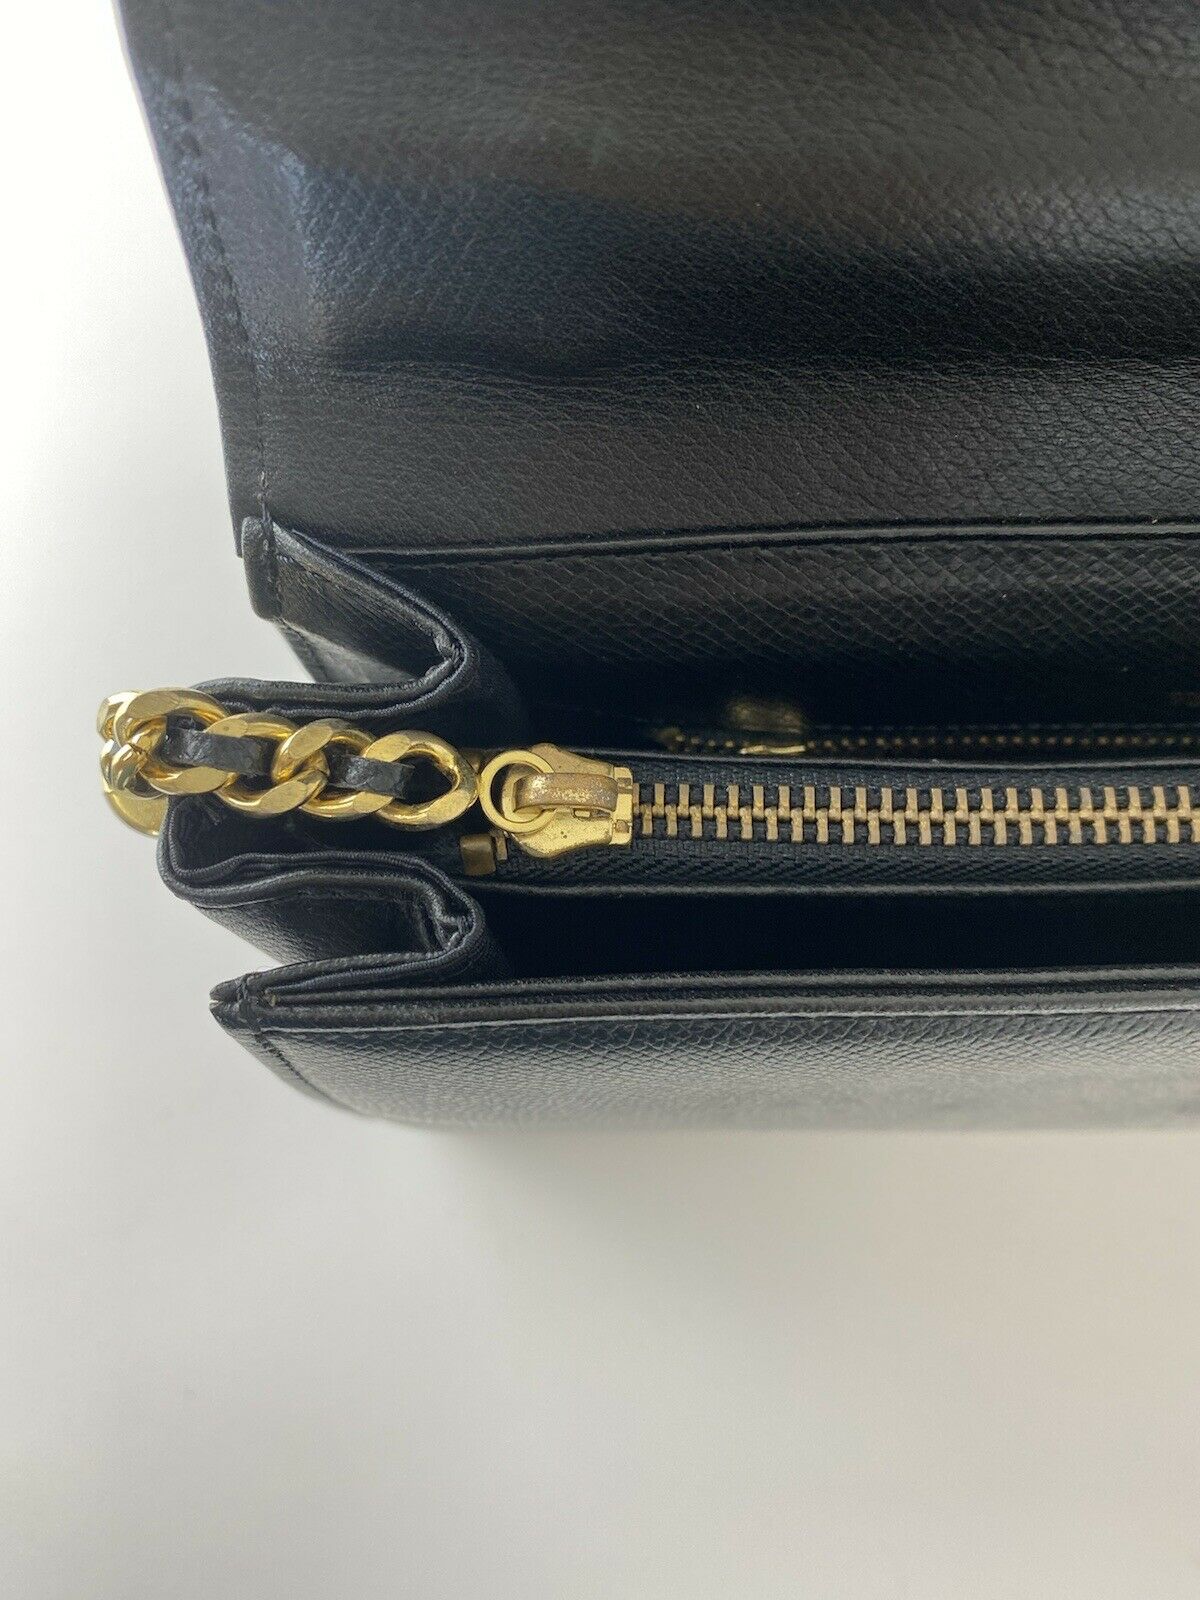 Valentino Garvani Leather Top Handle Handbag Black Tassel Fringe Vintage